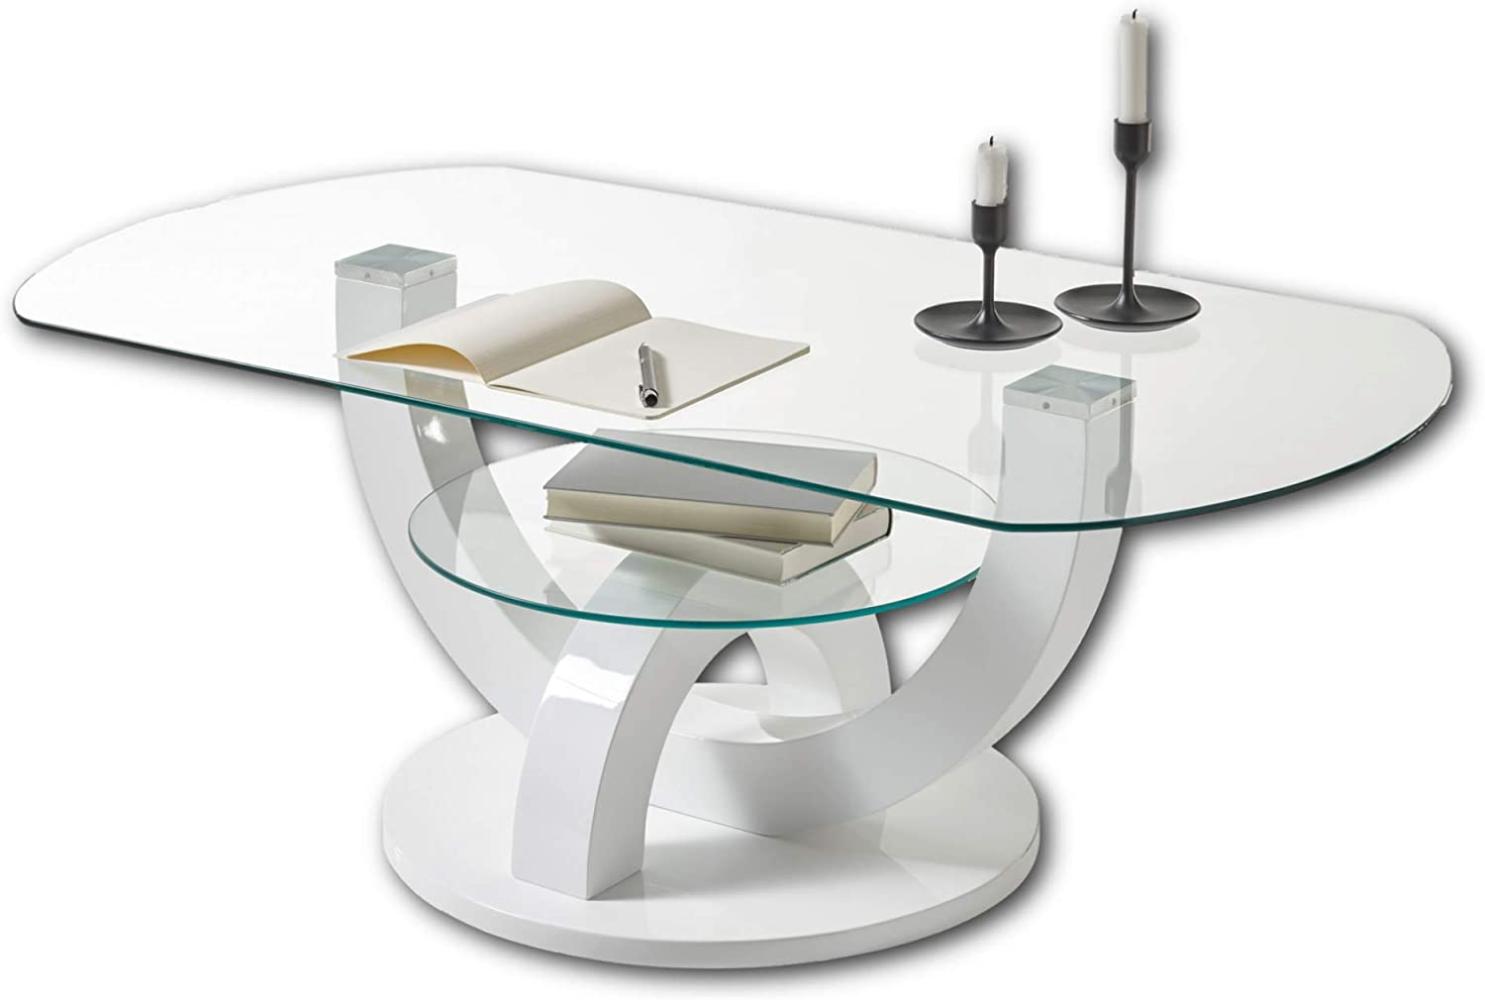 BOSTON Couchtisch Glas in Hochglanz weiß - stylisher Glastisch mit Ablage & geschwungenem Gestell in U-Form für Ihren Wohnbereich - 110 x 40 x 60 cm (B/H/T) Bild 1